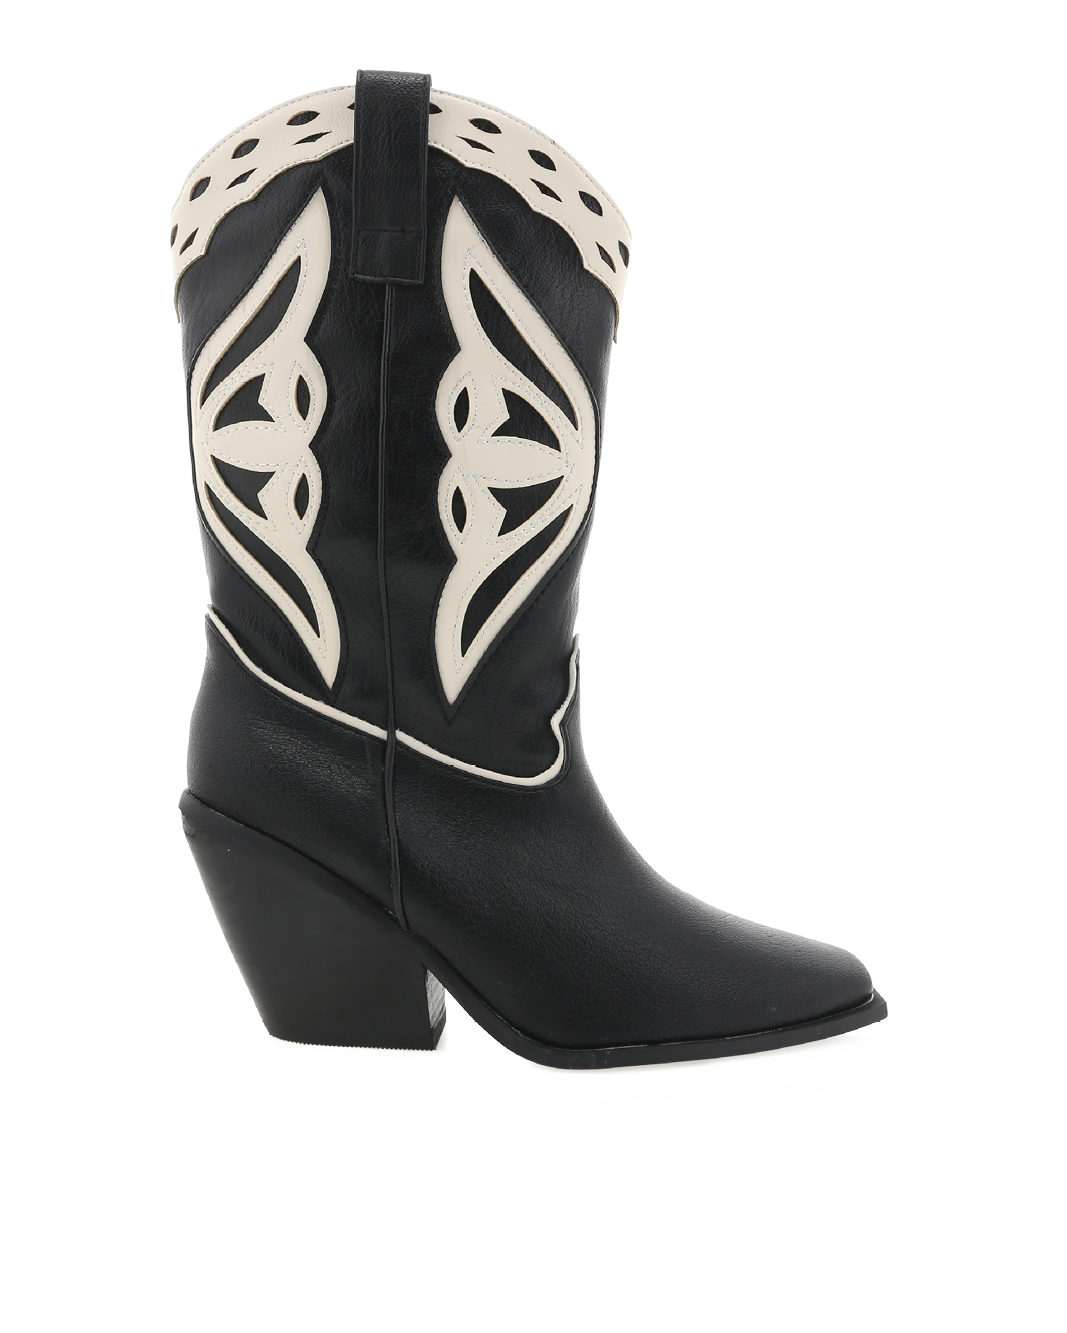 CLAIRE - BLACK-IVORY-Boots-Billini-BILLINI USA